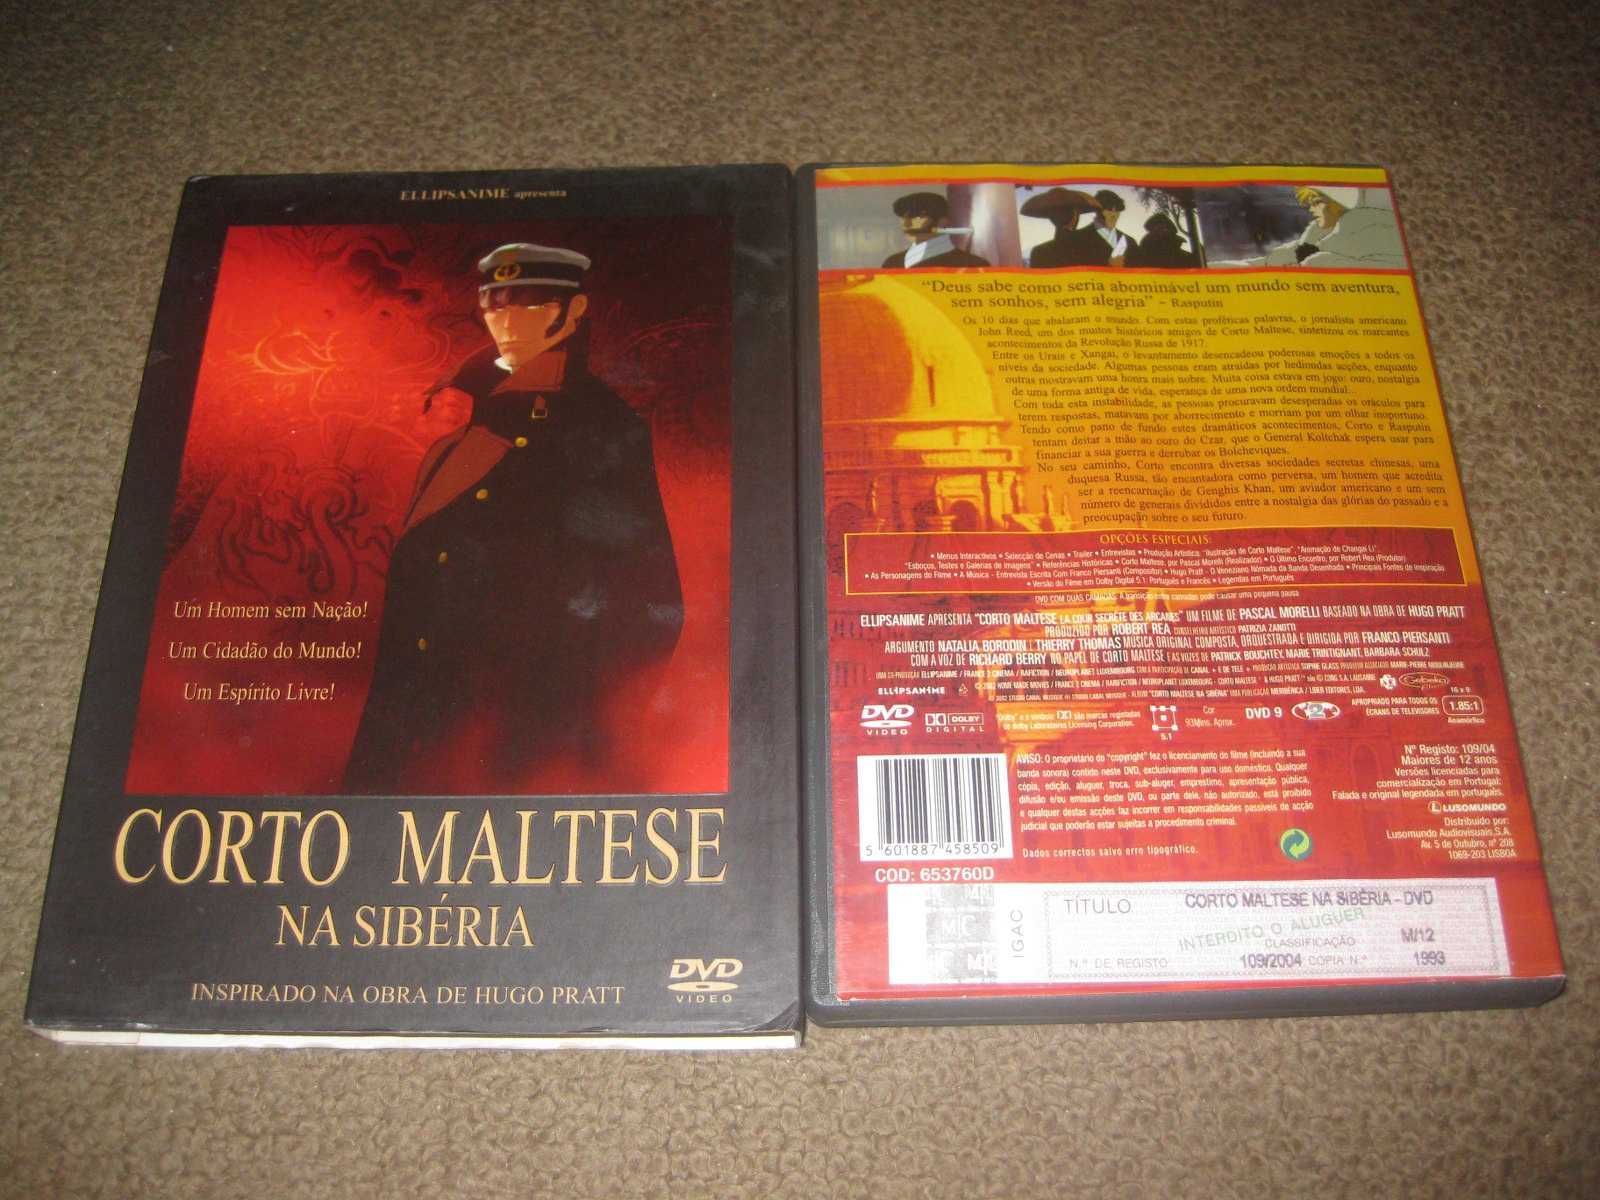 DVD "Corto Maltese na Sibéria" Edição Especial em Slidepack!